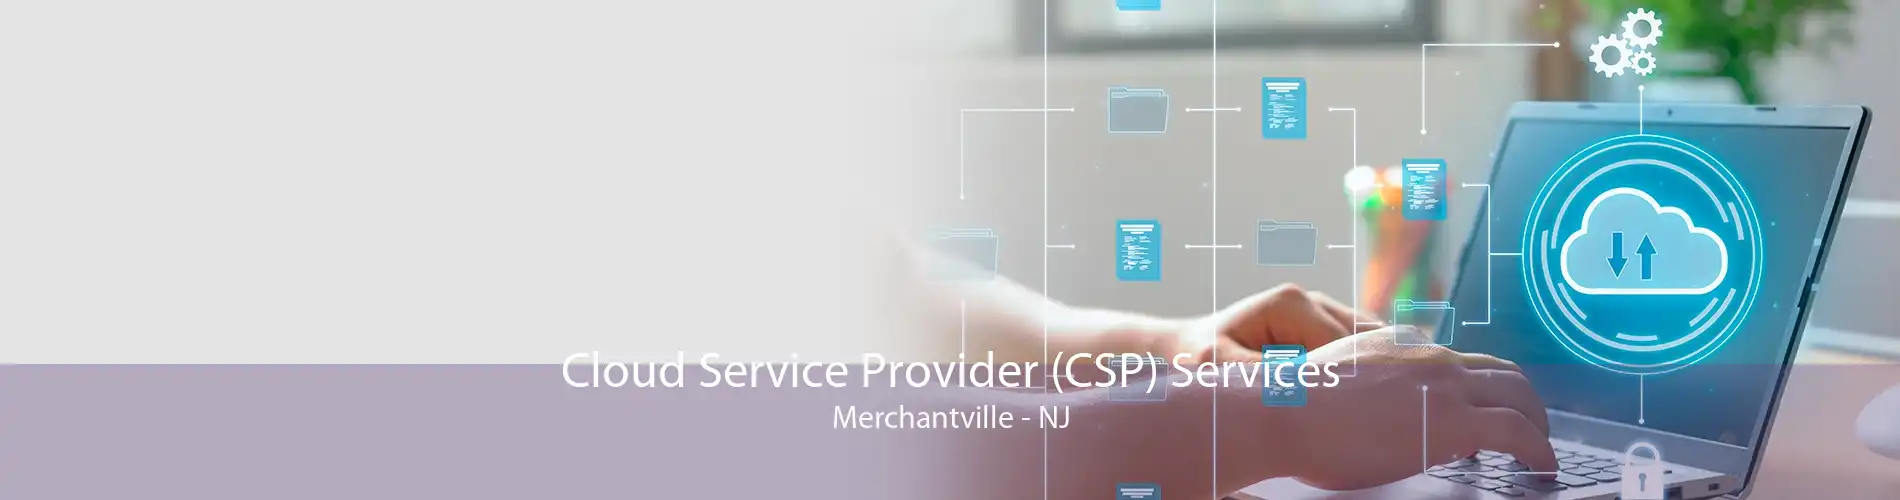 Cloud Service Provider (CSP) Services Merchantville - NJ